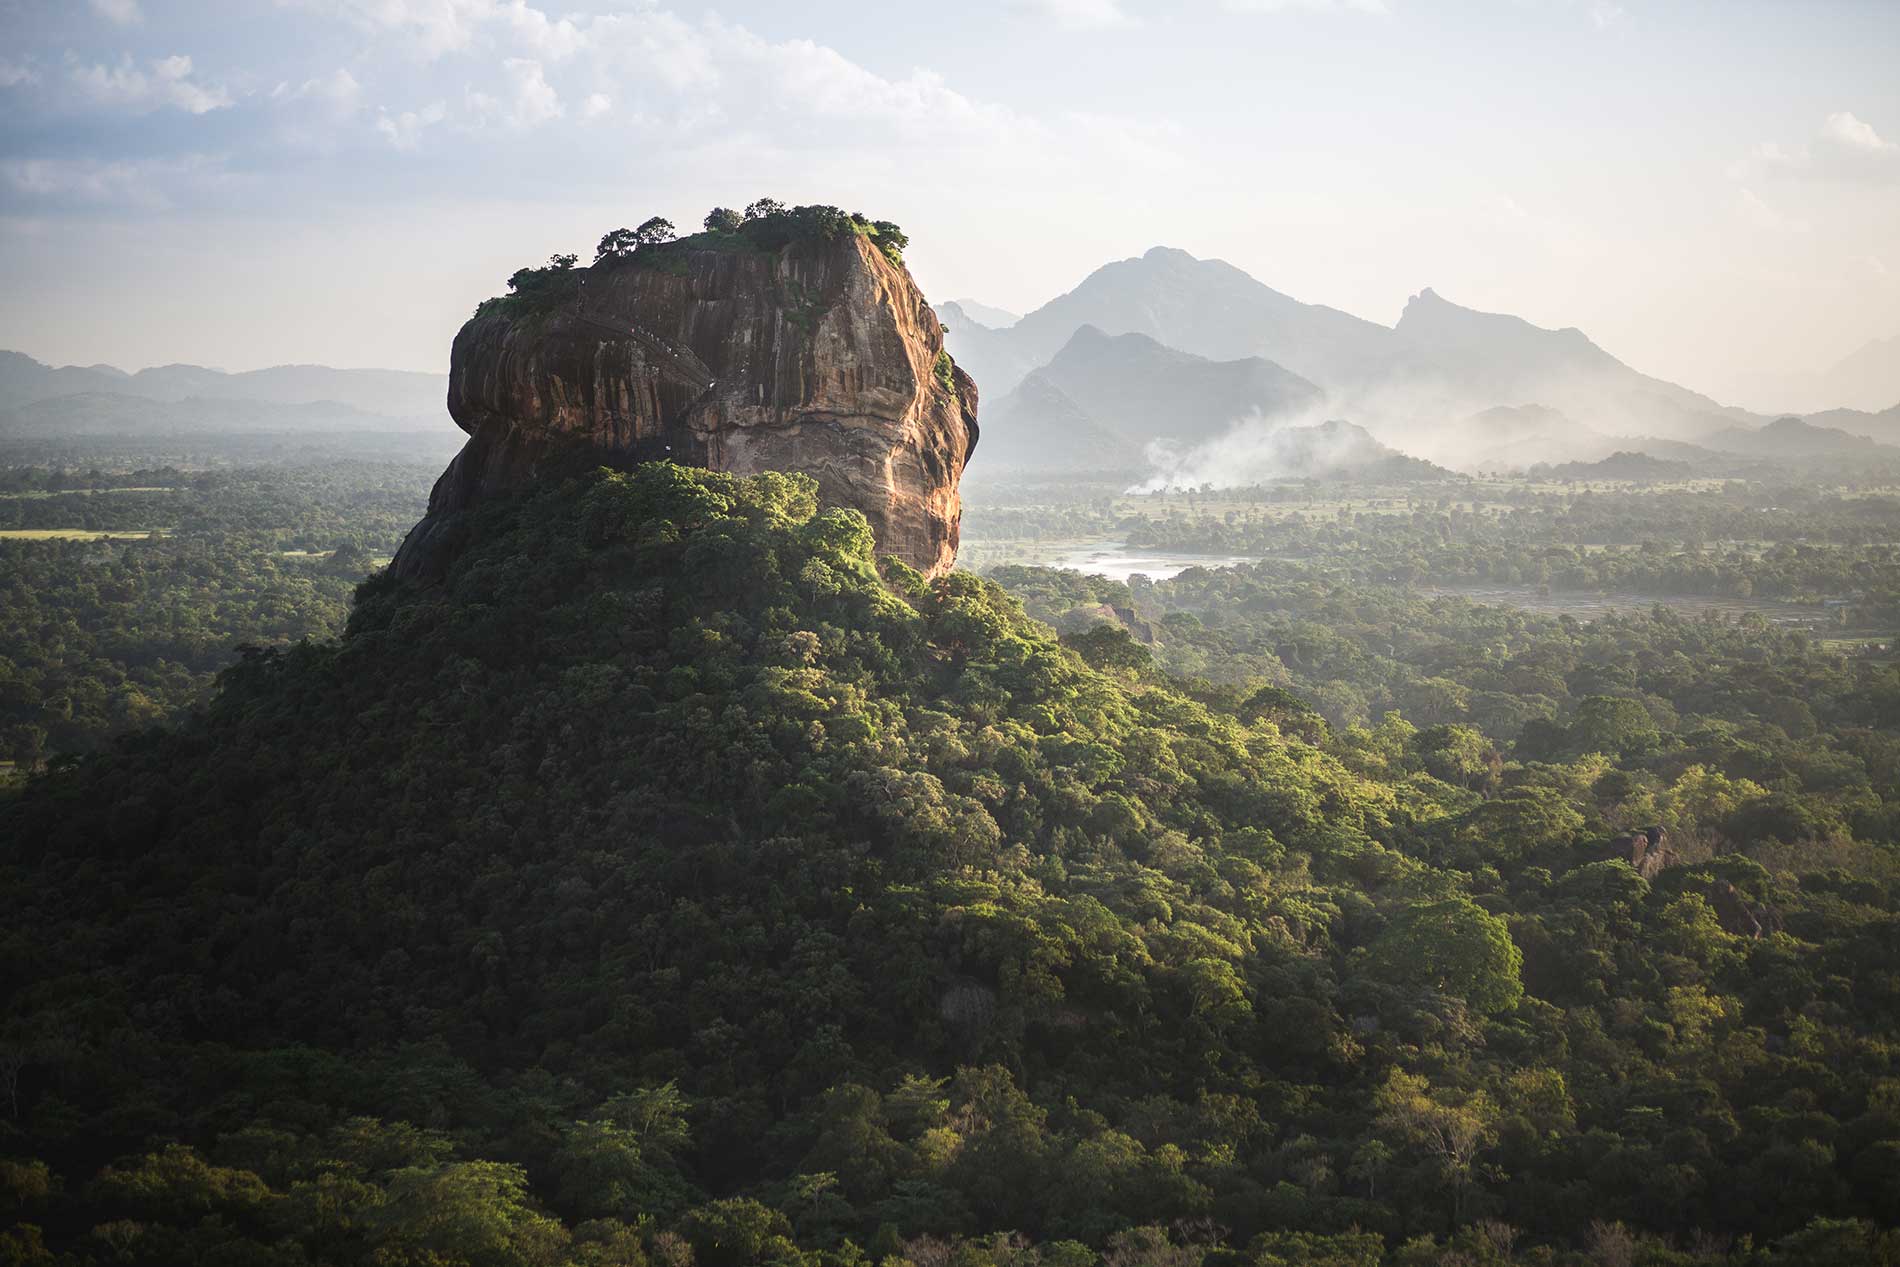 Image of the Sigiriya rock